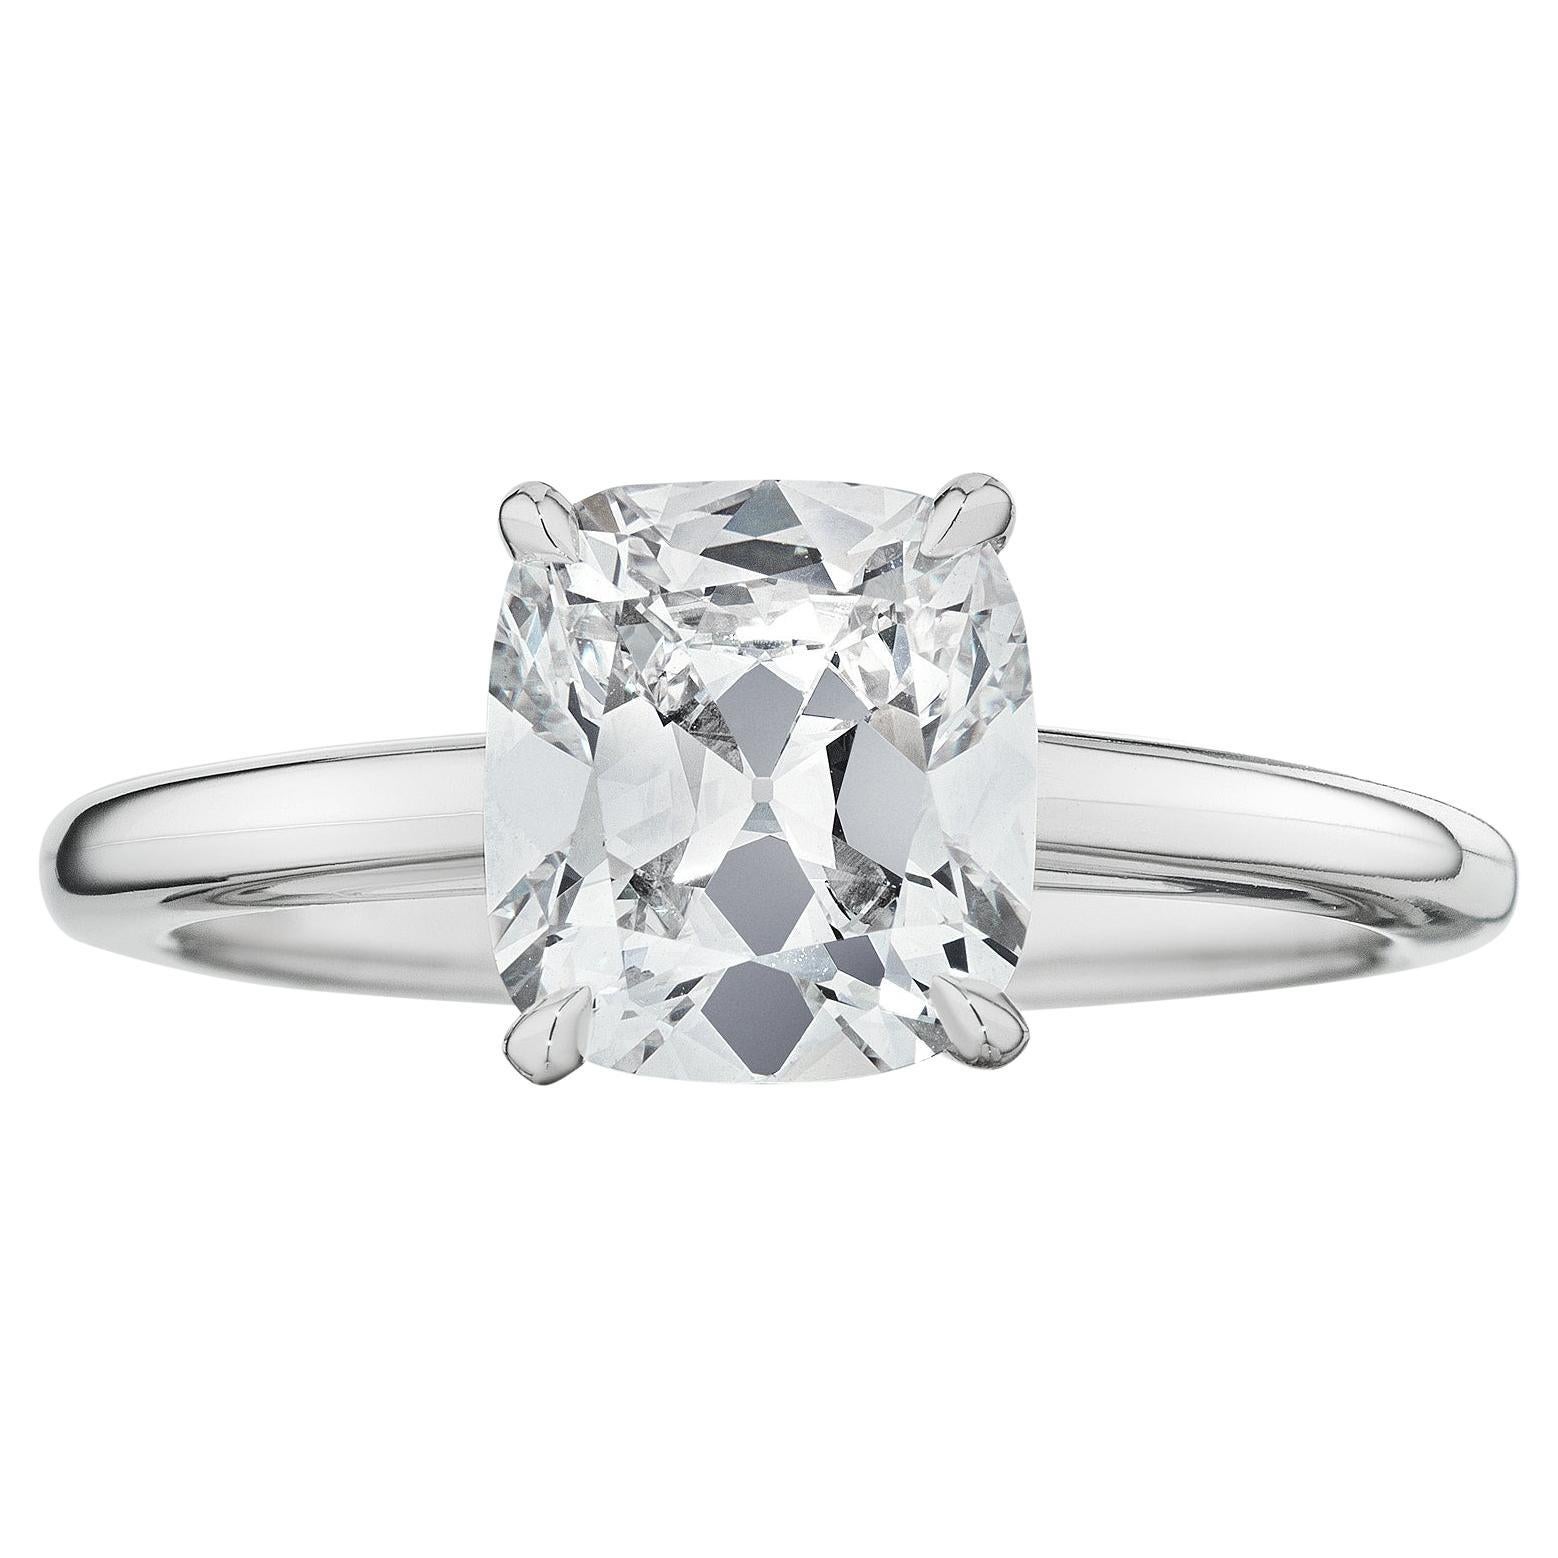 1.70 Carat Cushion Cut Brilliant Diamond Platinum Engagement Ring